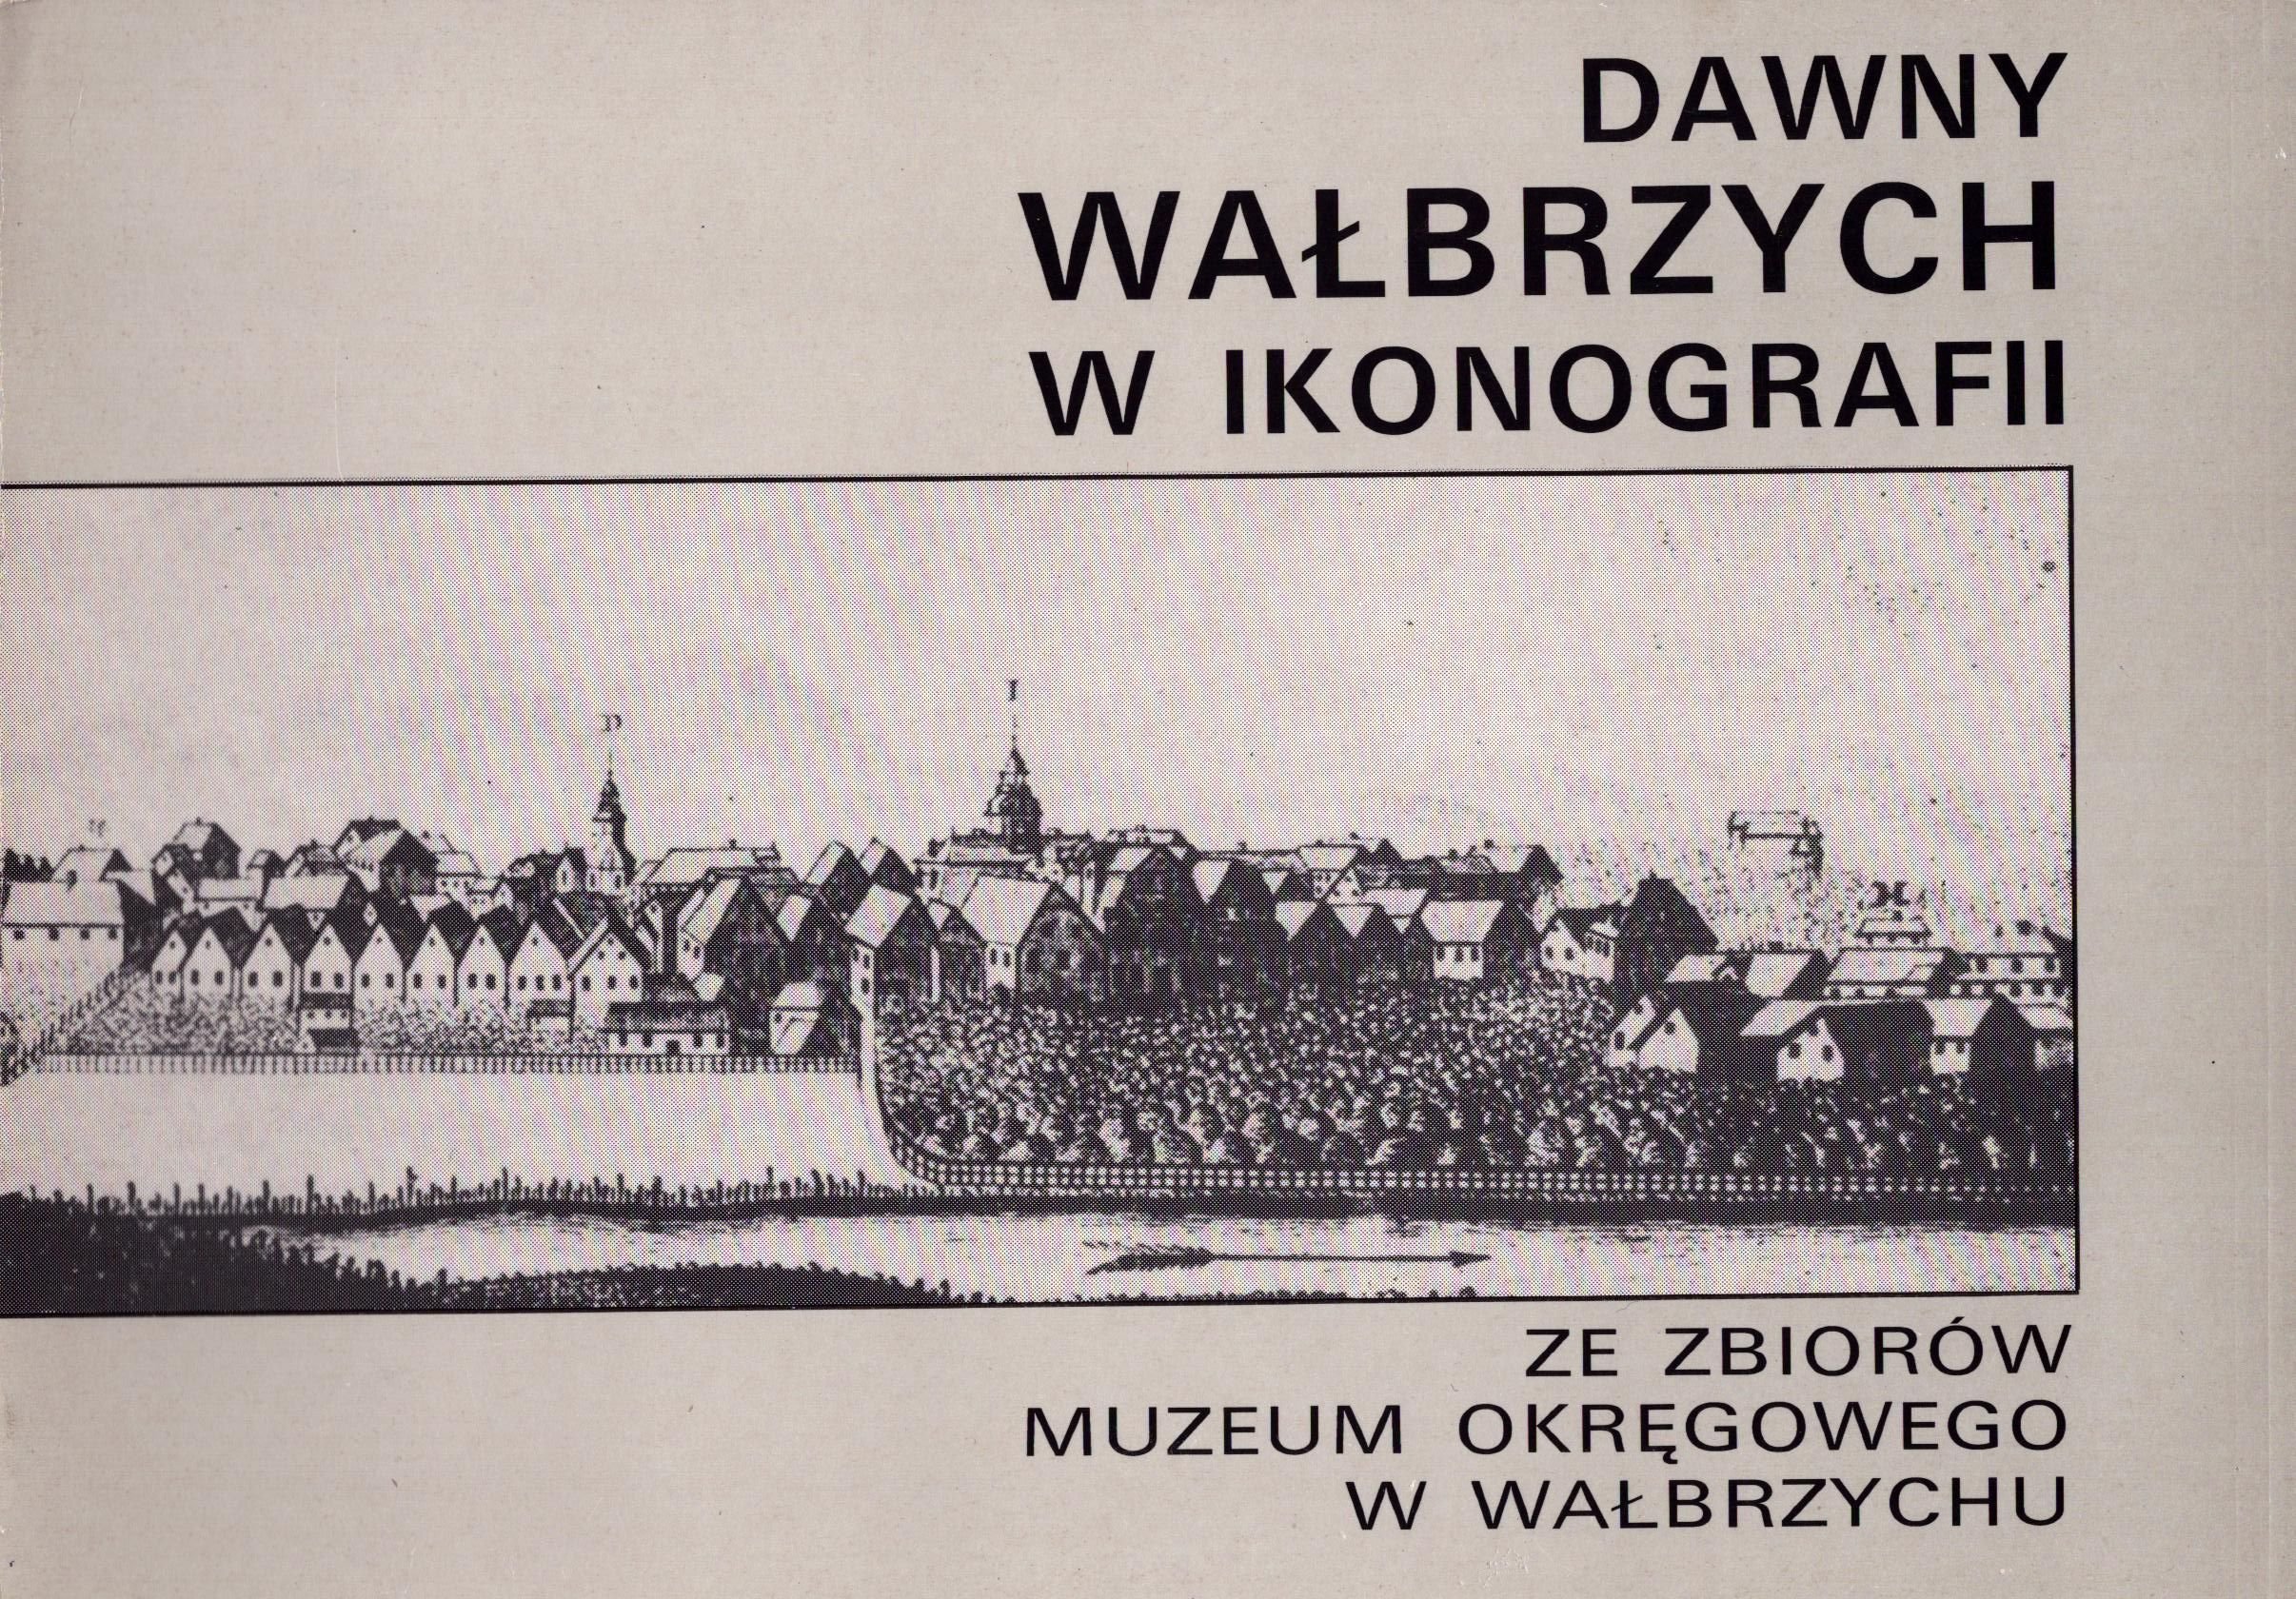 Dawny Wałbrzych w ikonografii (Archiv SAXONIA-FREIBERG-STIFTUNG CC BY-NC-SA)